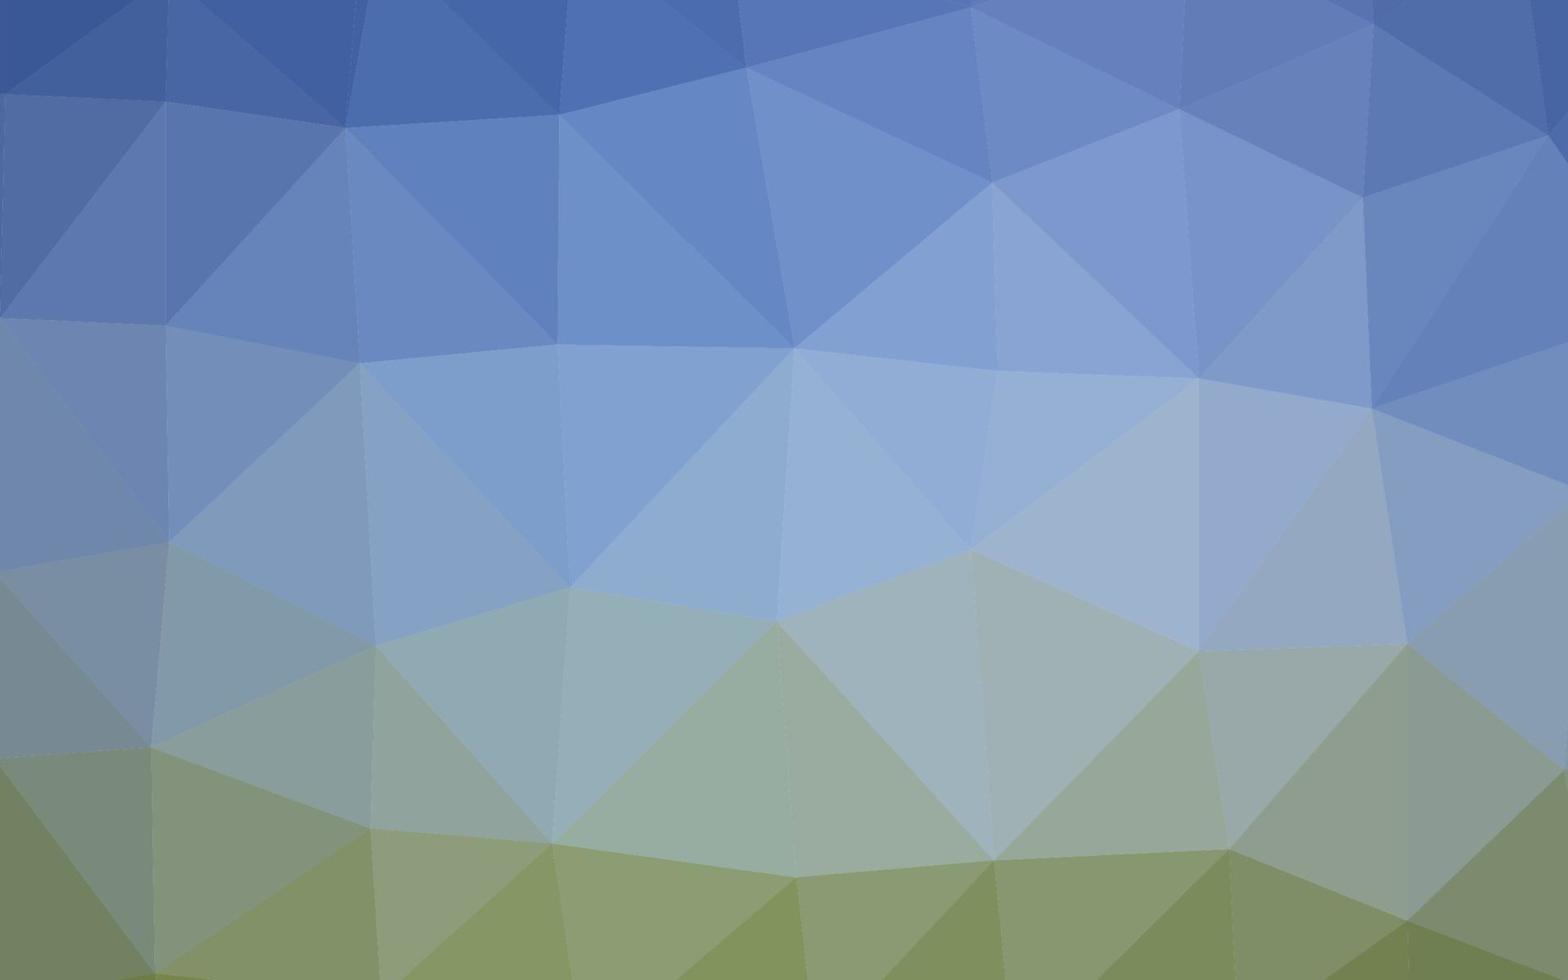 diseño poligonal abstracto del vector azul claro, verde.